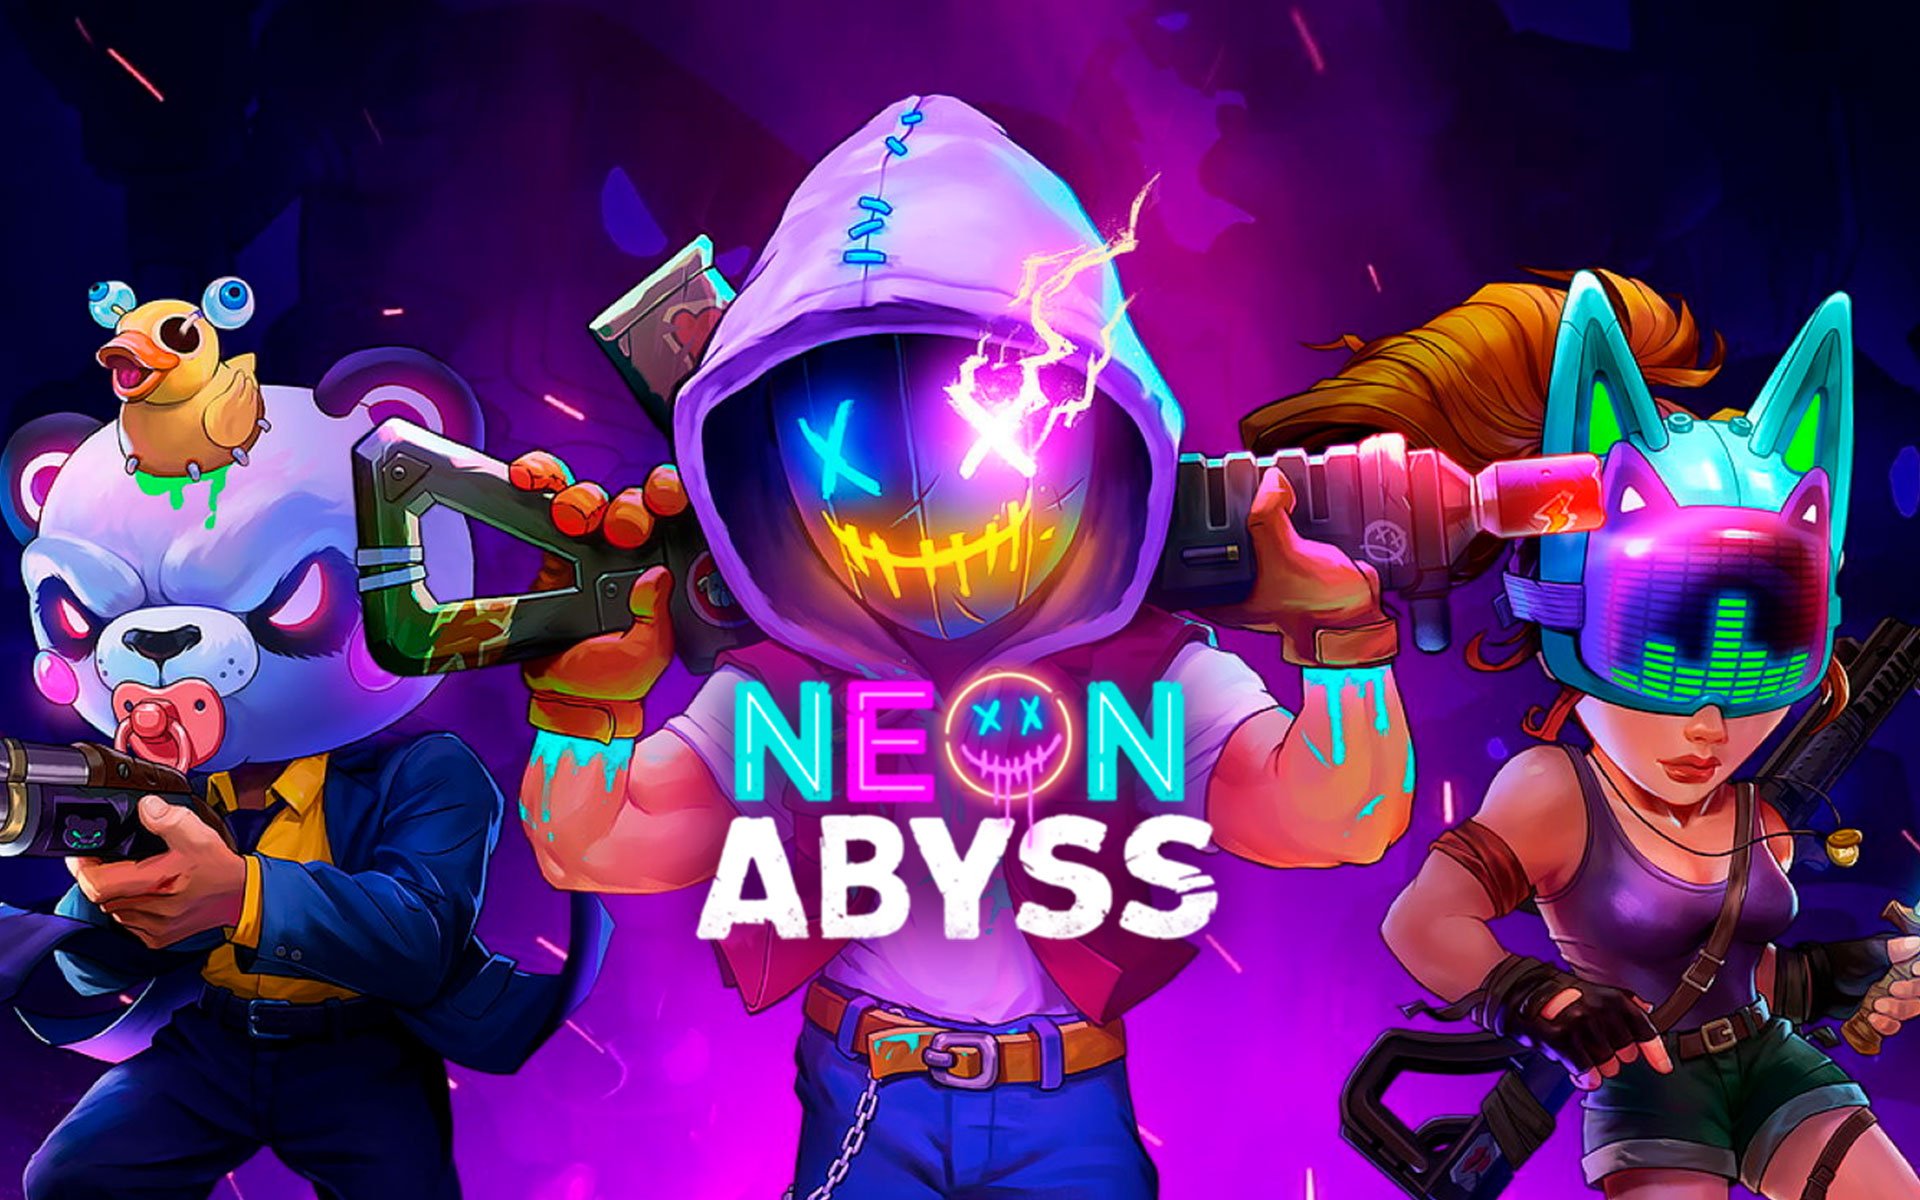 Compre Neon Abyss a partir de R$ 59.99